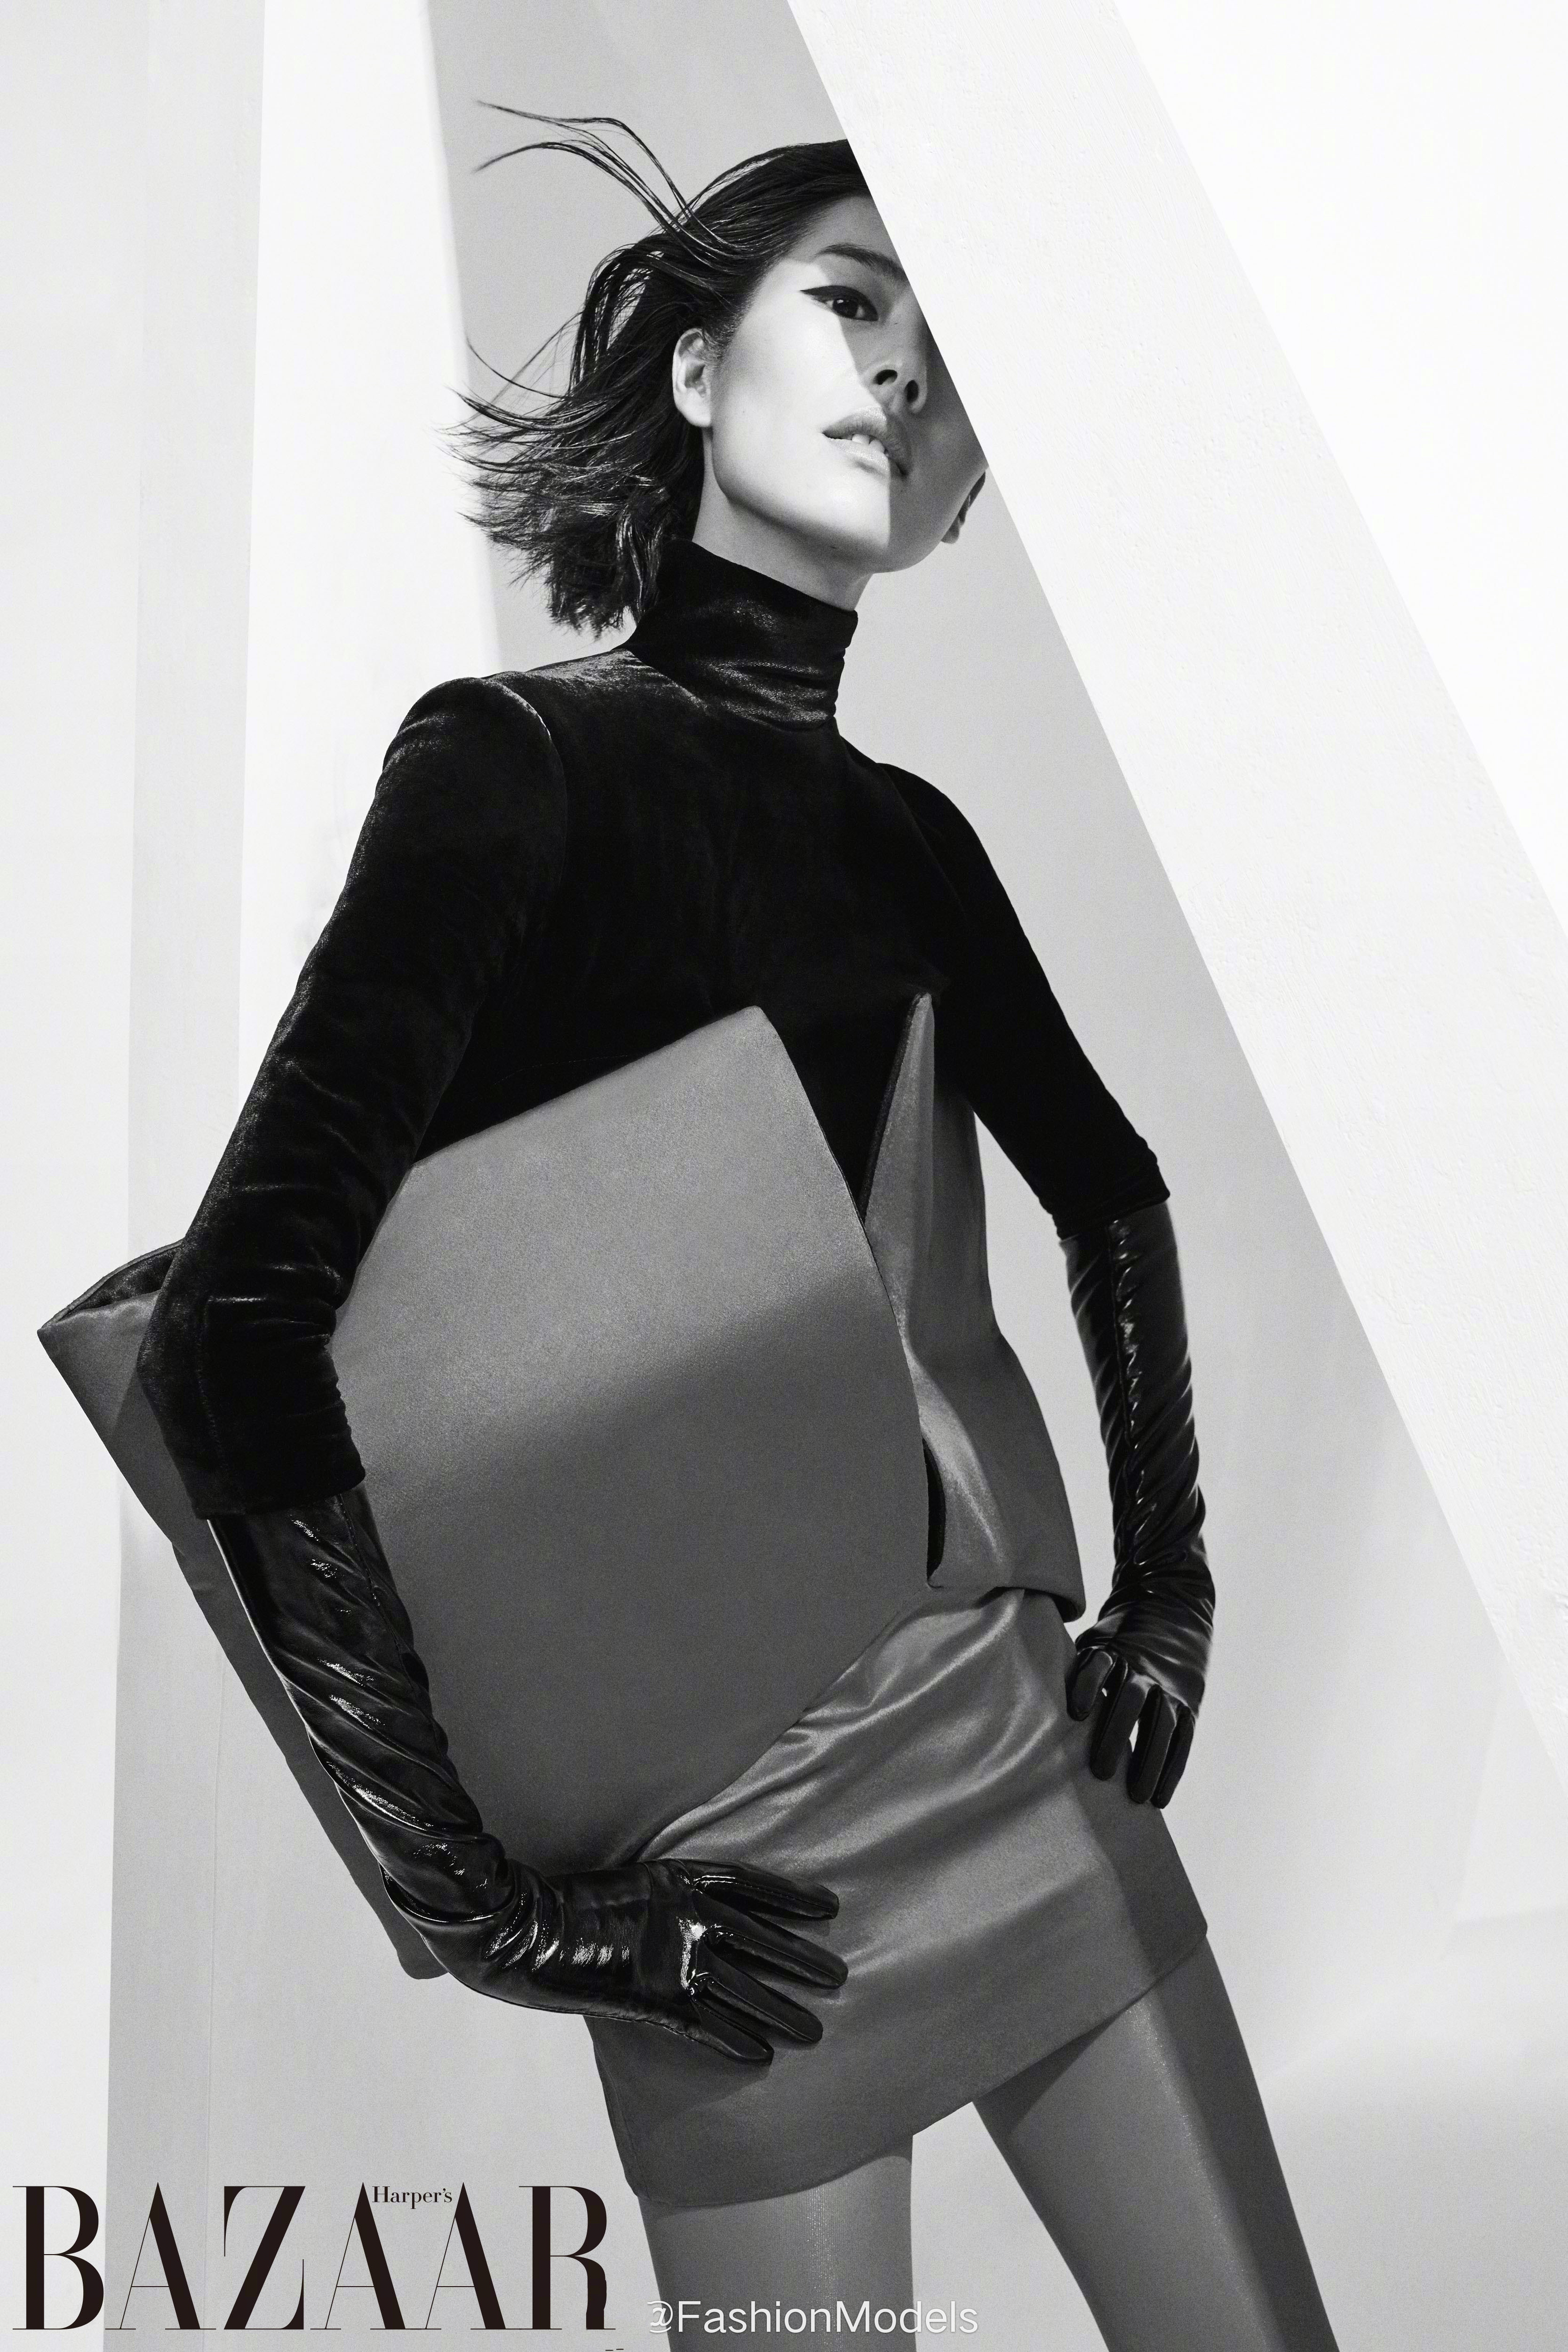 中国超模刘雯身着印花连体衣登上时尚杂志封面封面,在黑白极简风大片